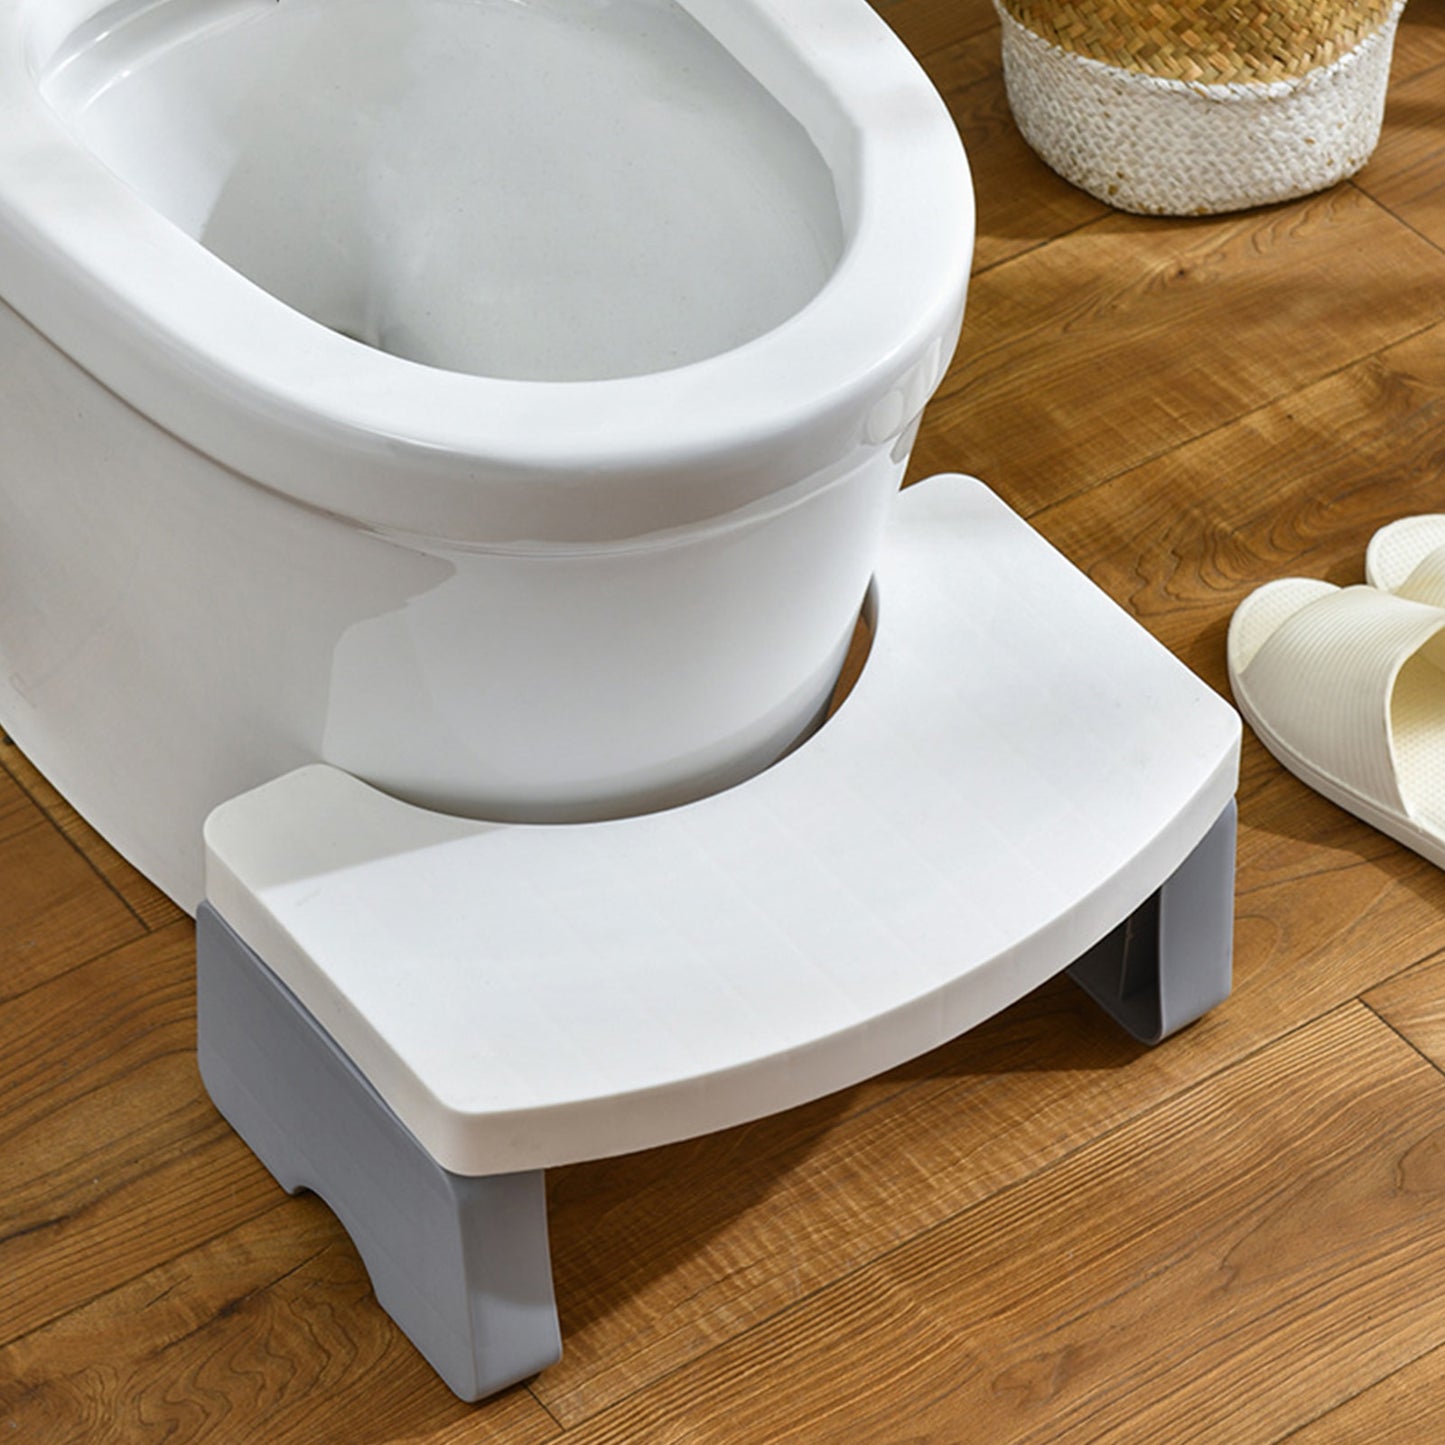 Toilet Step Stool Toilet Squat Footstool Toilet stool - White